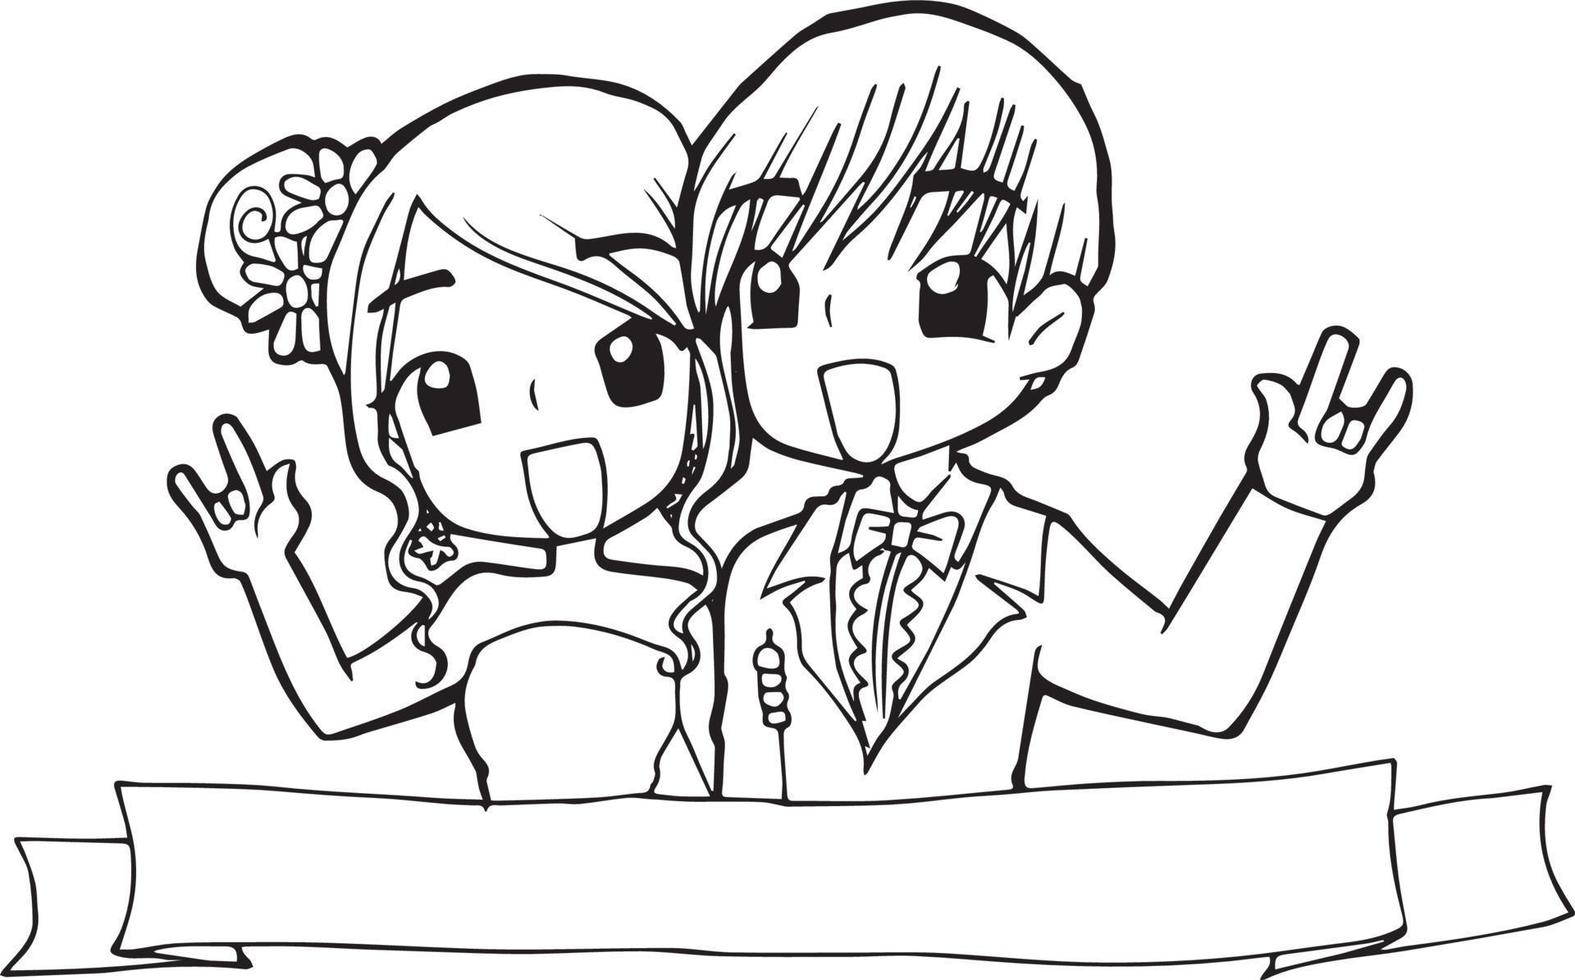 mariage dessin animé griffonnage kawaii anime coloriage mignonne illustration dessin clipart personnage chibi manga des bandes dessinées vecteur